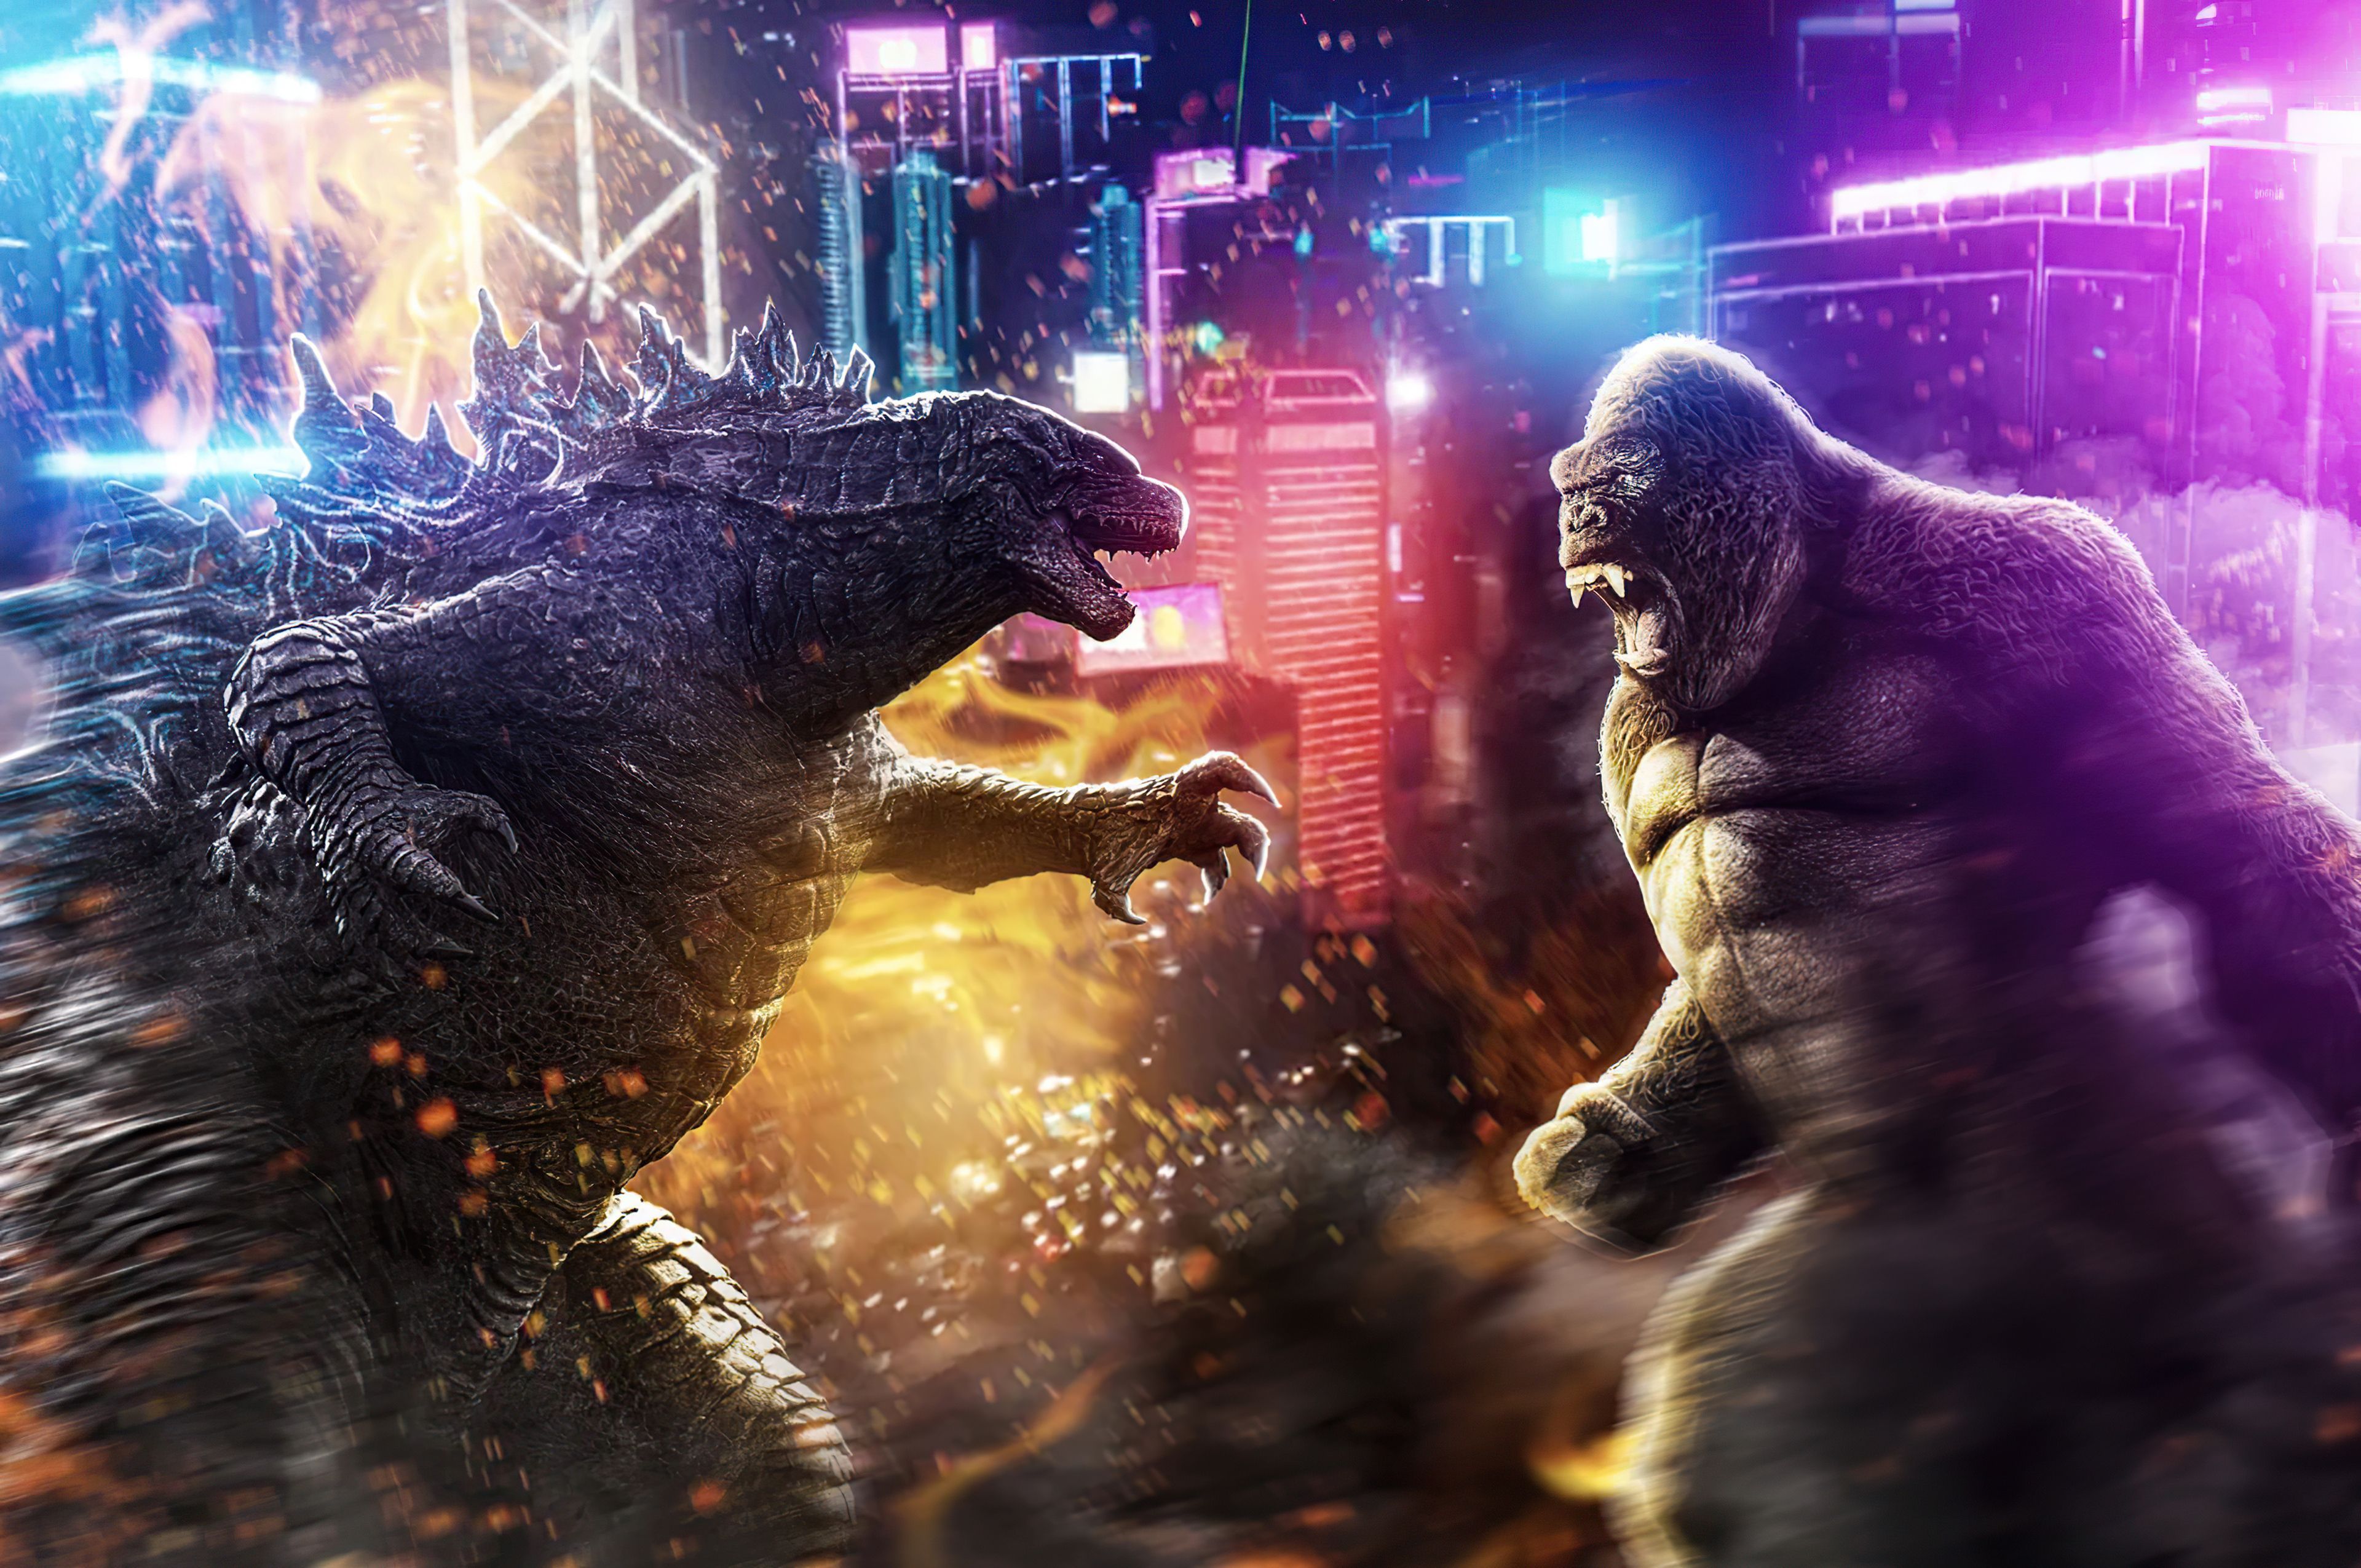 Godzilla Vs Kong Official Poster